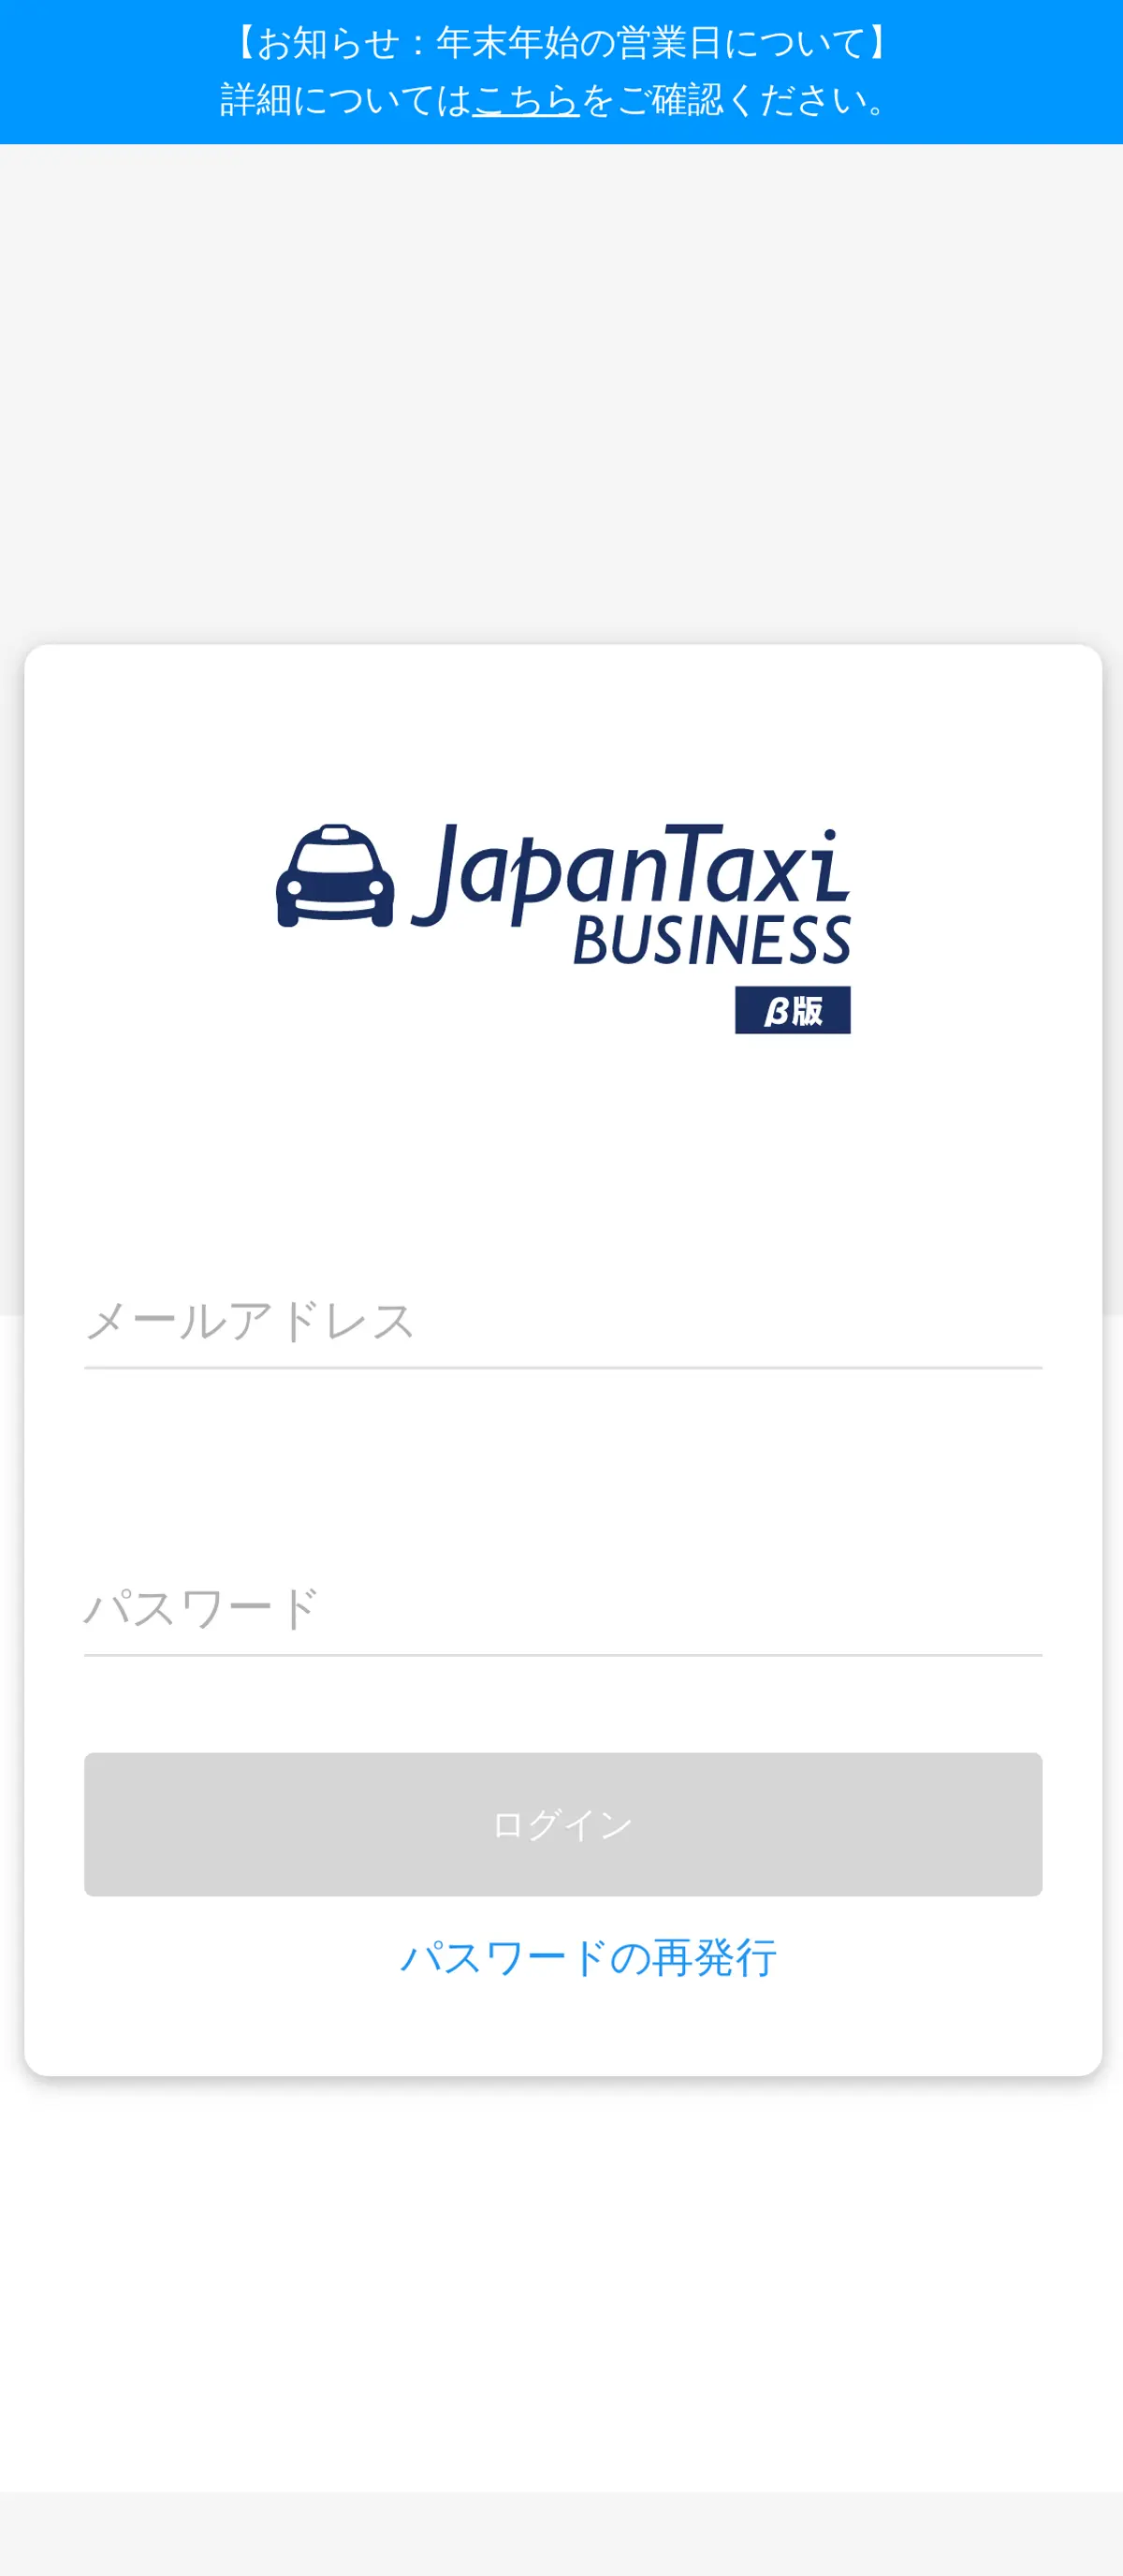 キャプチャ画面 会社名:株式会社Mobility Technologiesプロジェクト名:Japan Taxi BUSINESS 画面名:ログイン デバイス名:SPカテゴリ:タクシー・バスタグ:ログイン,SP